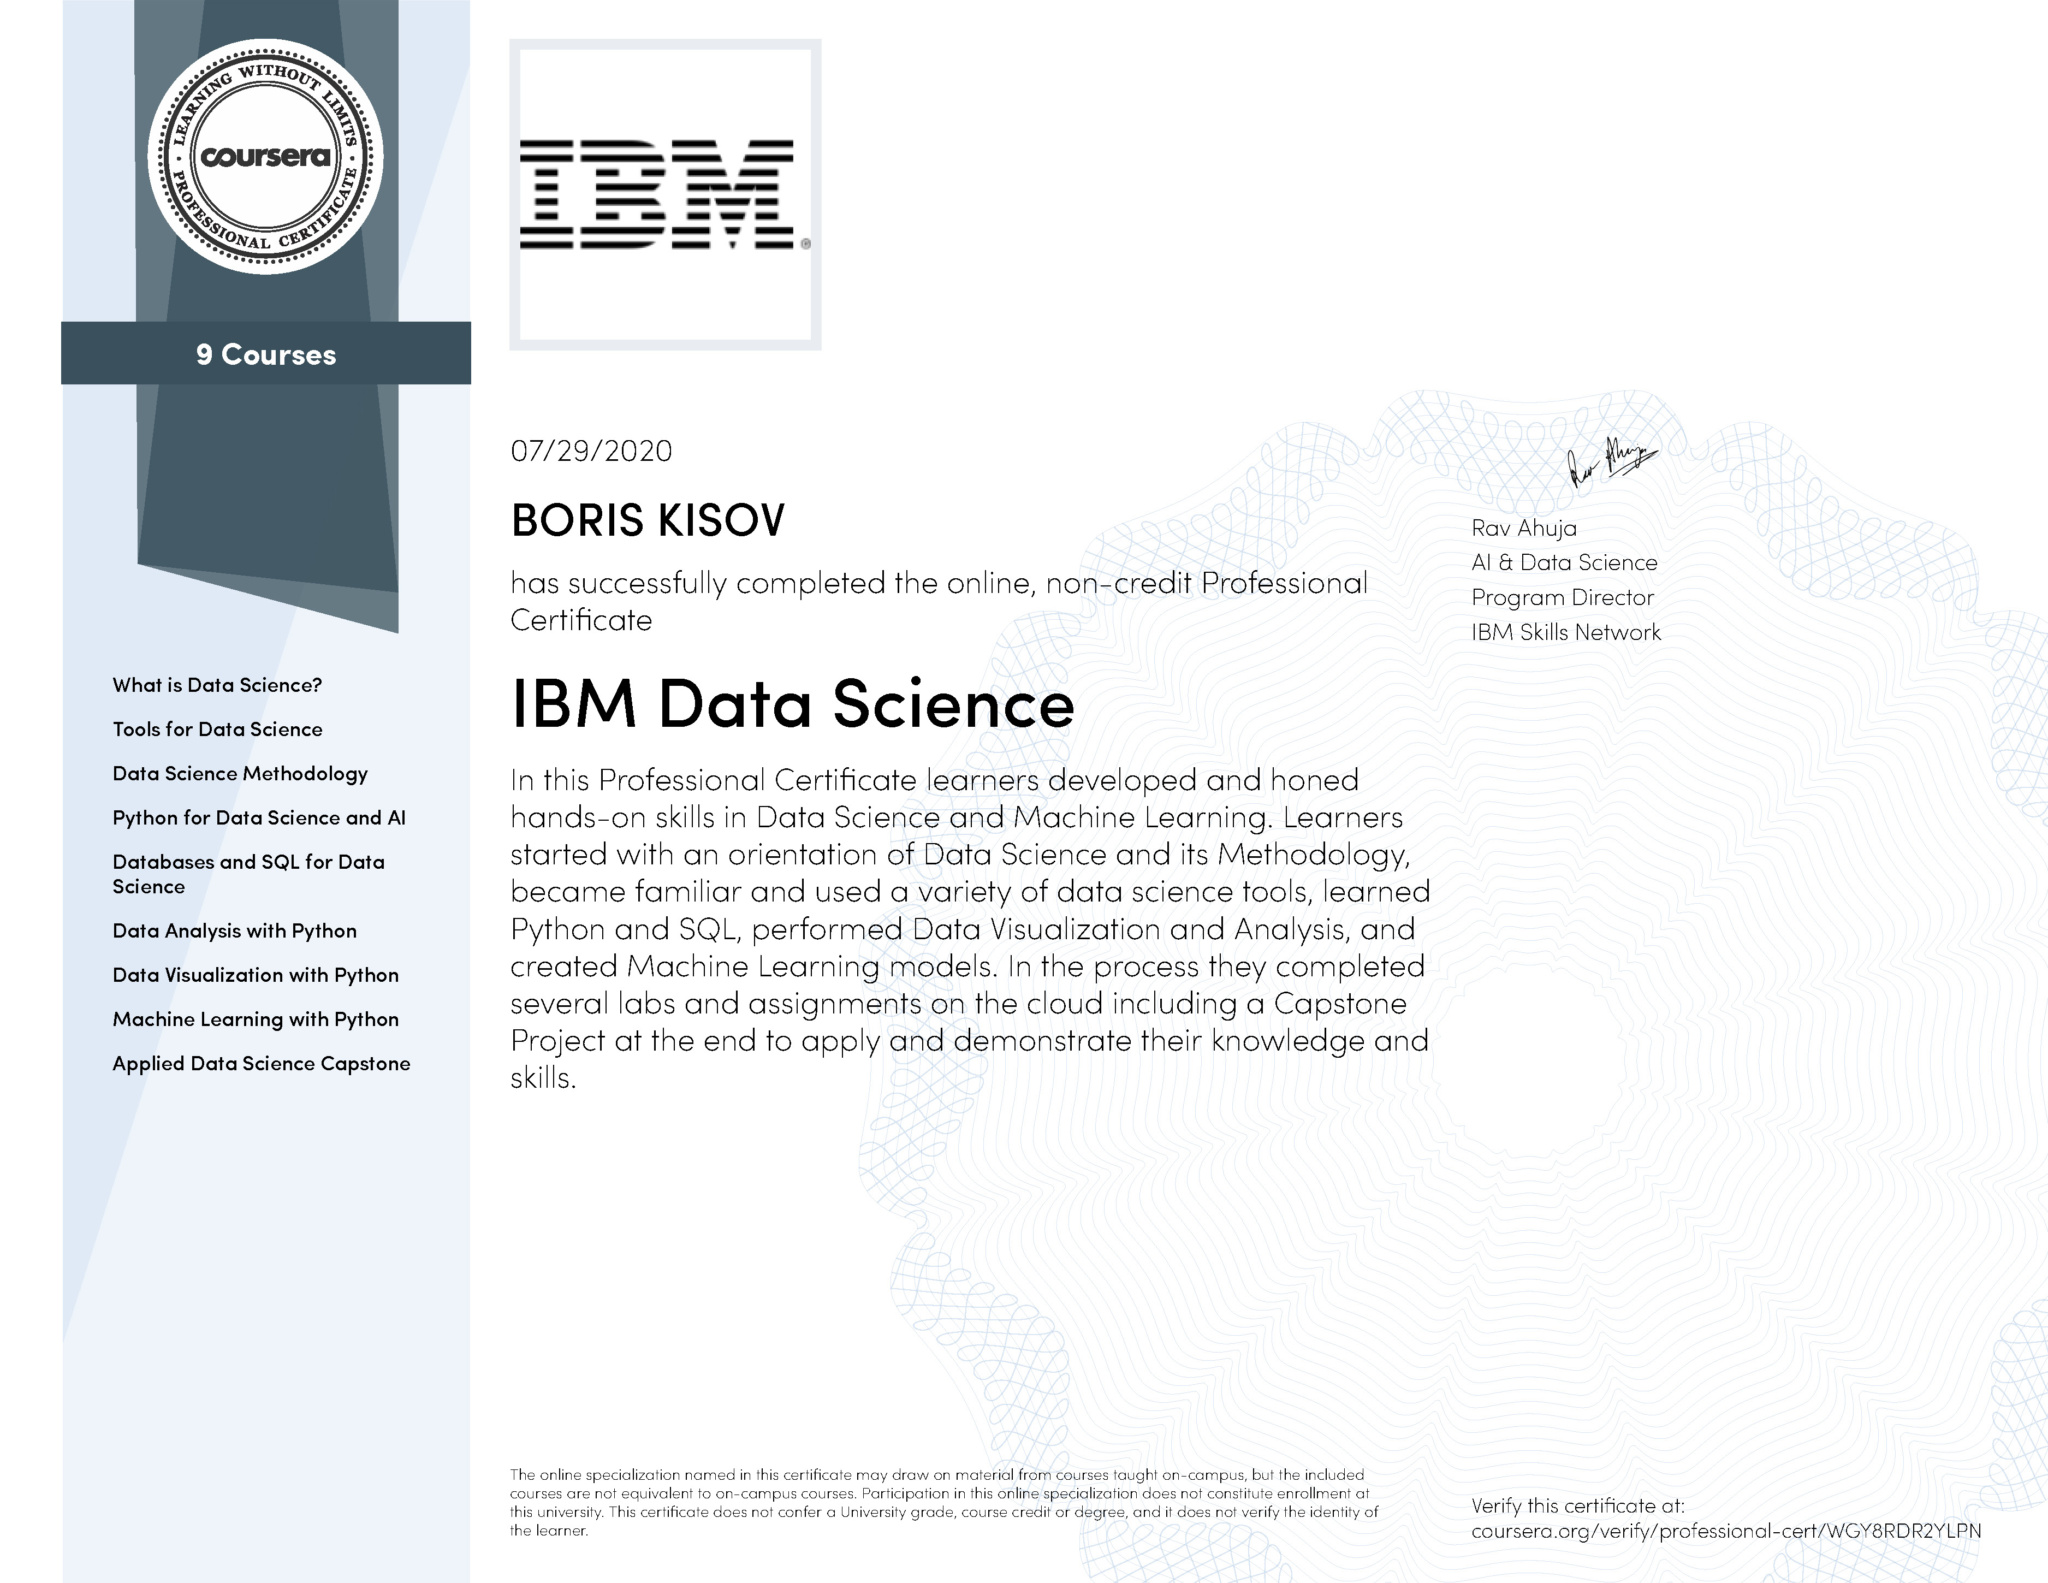 IBM DATA SCIENCE PROFESSIONAL CERTIFICATE KISOV BORIS